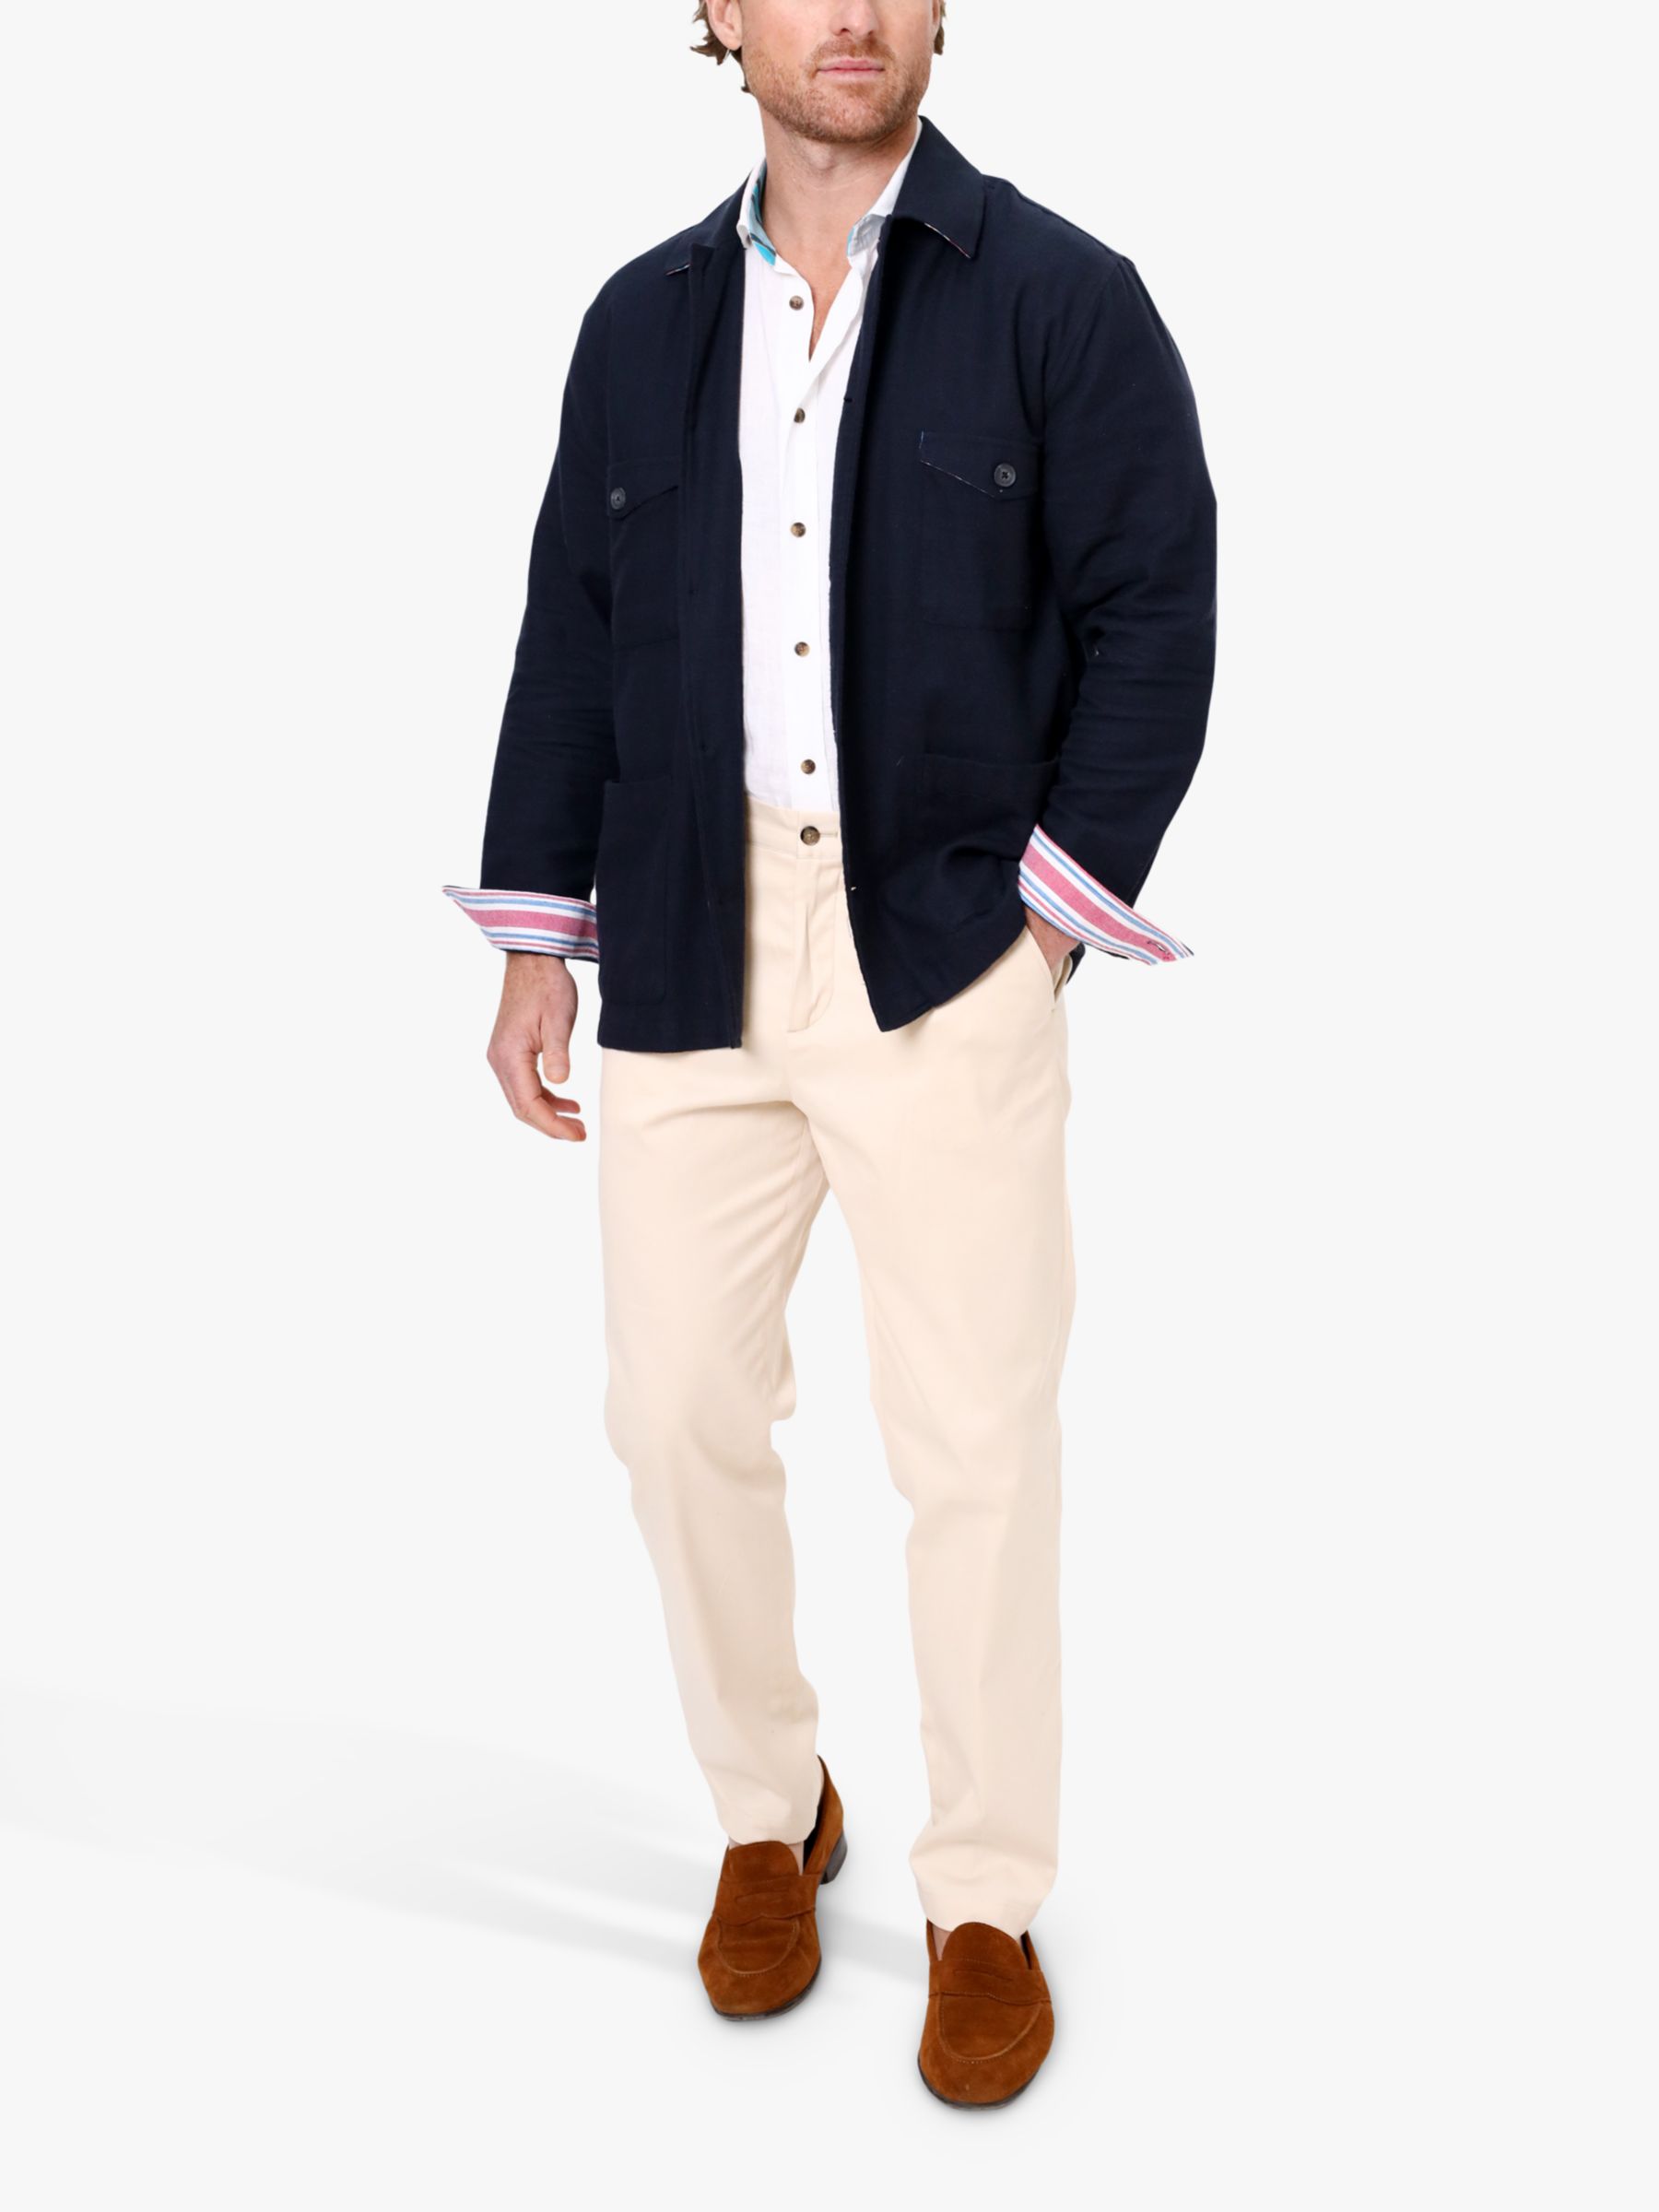 KOY Cotton Shirt Jacket, Navy, L